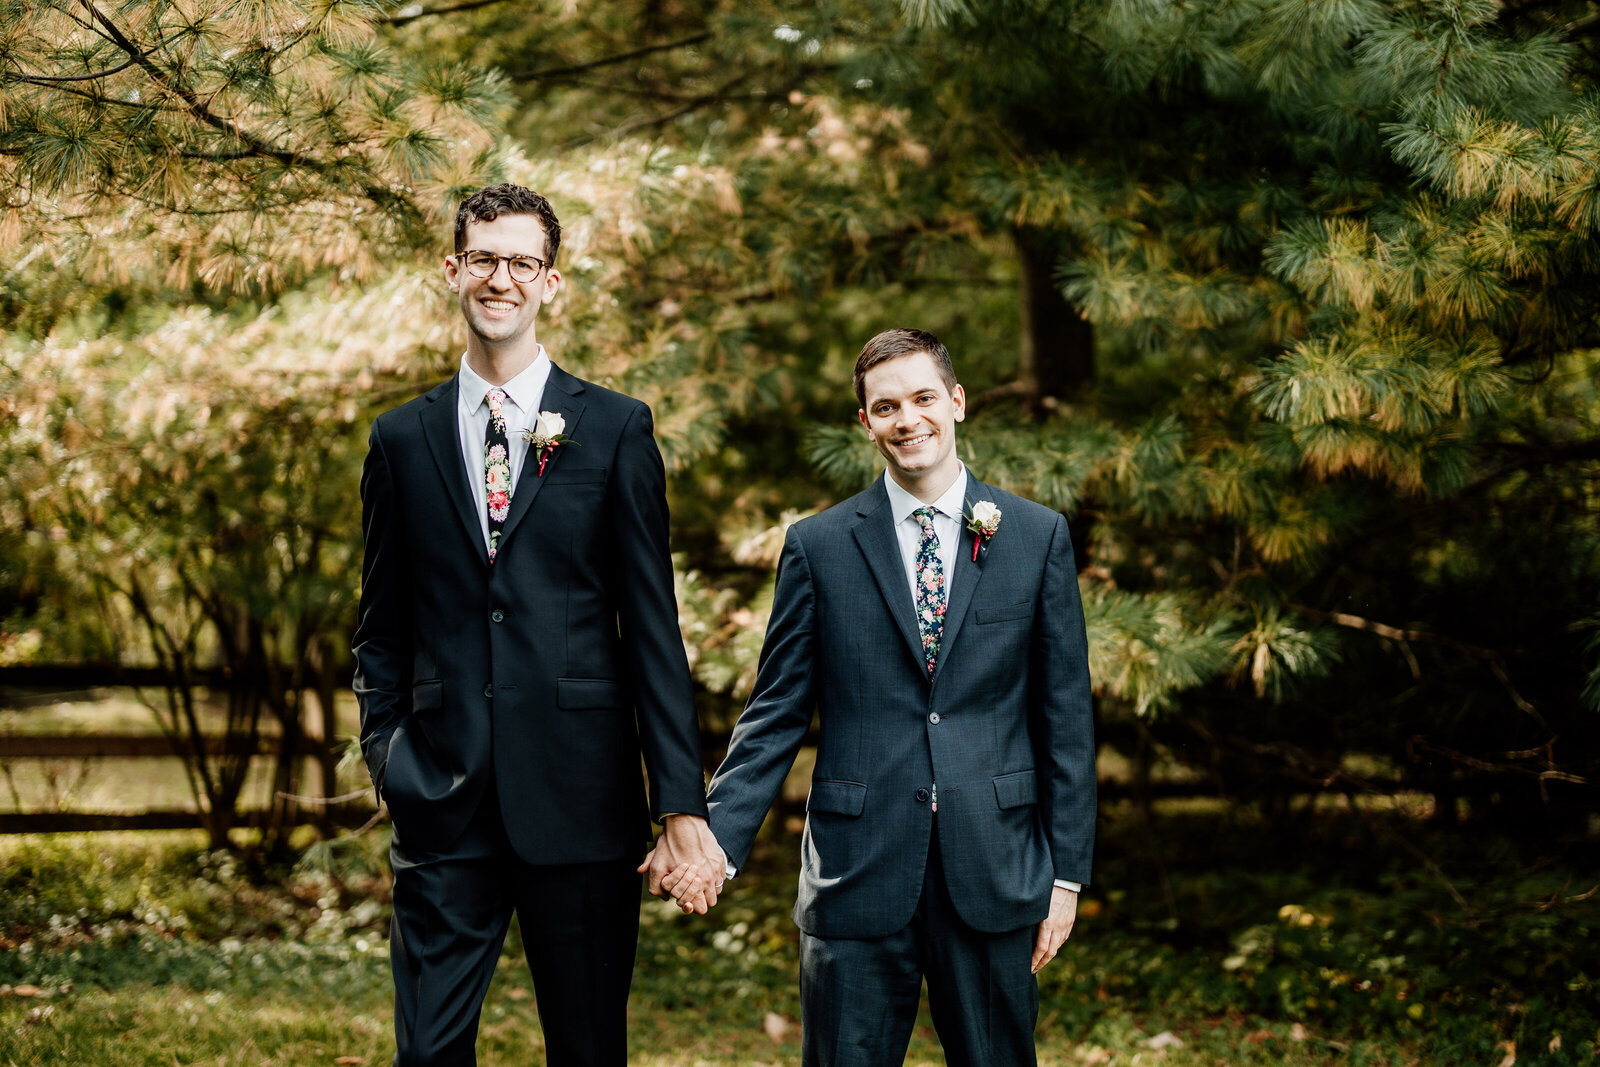 gay grooms holding hands in nature garden